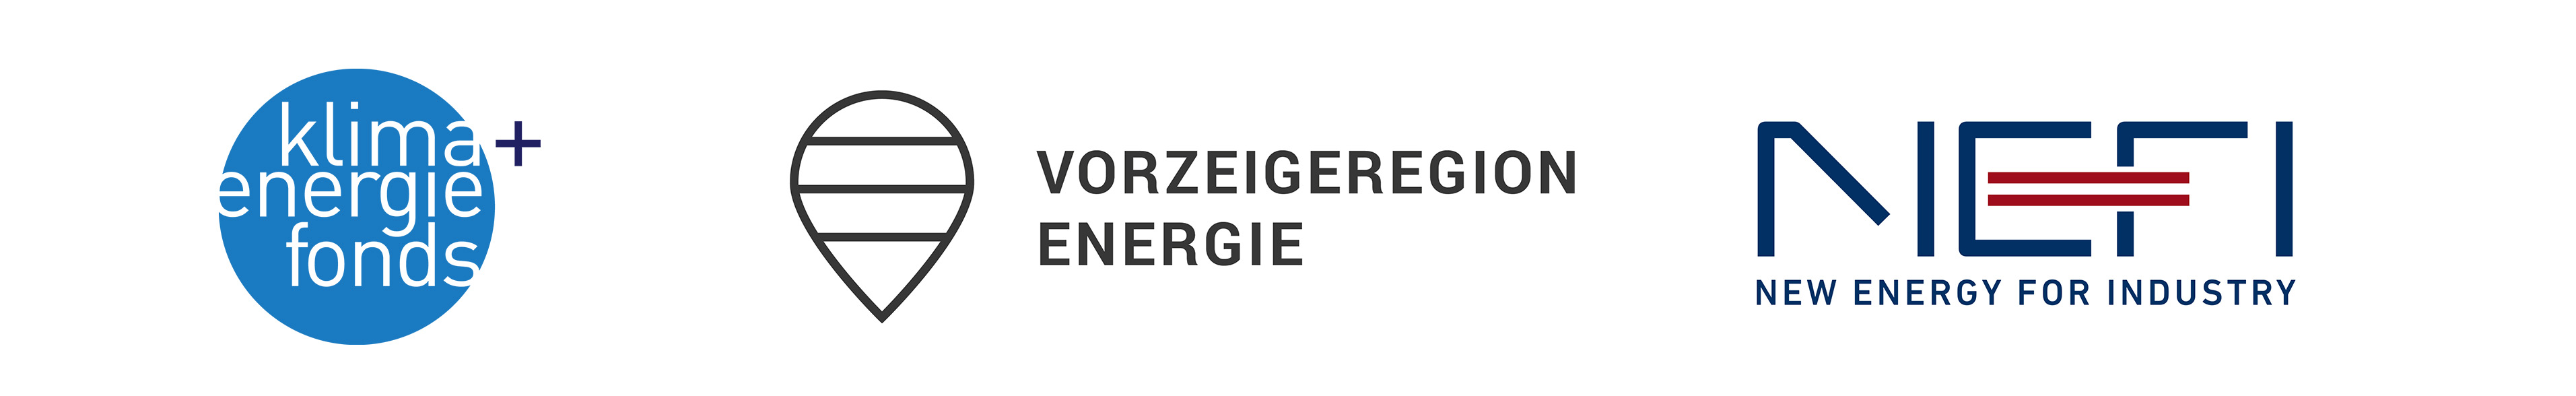 Logo of Klima und Energiefonds, Vorzeigeregion Energie and NEFI